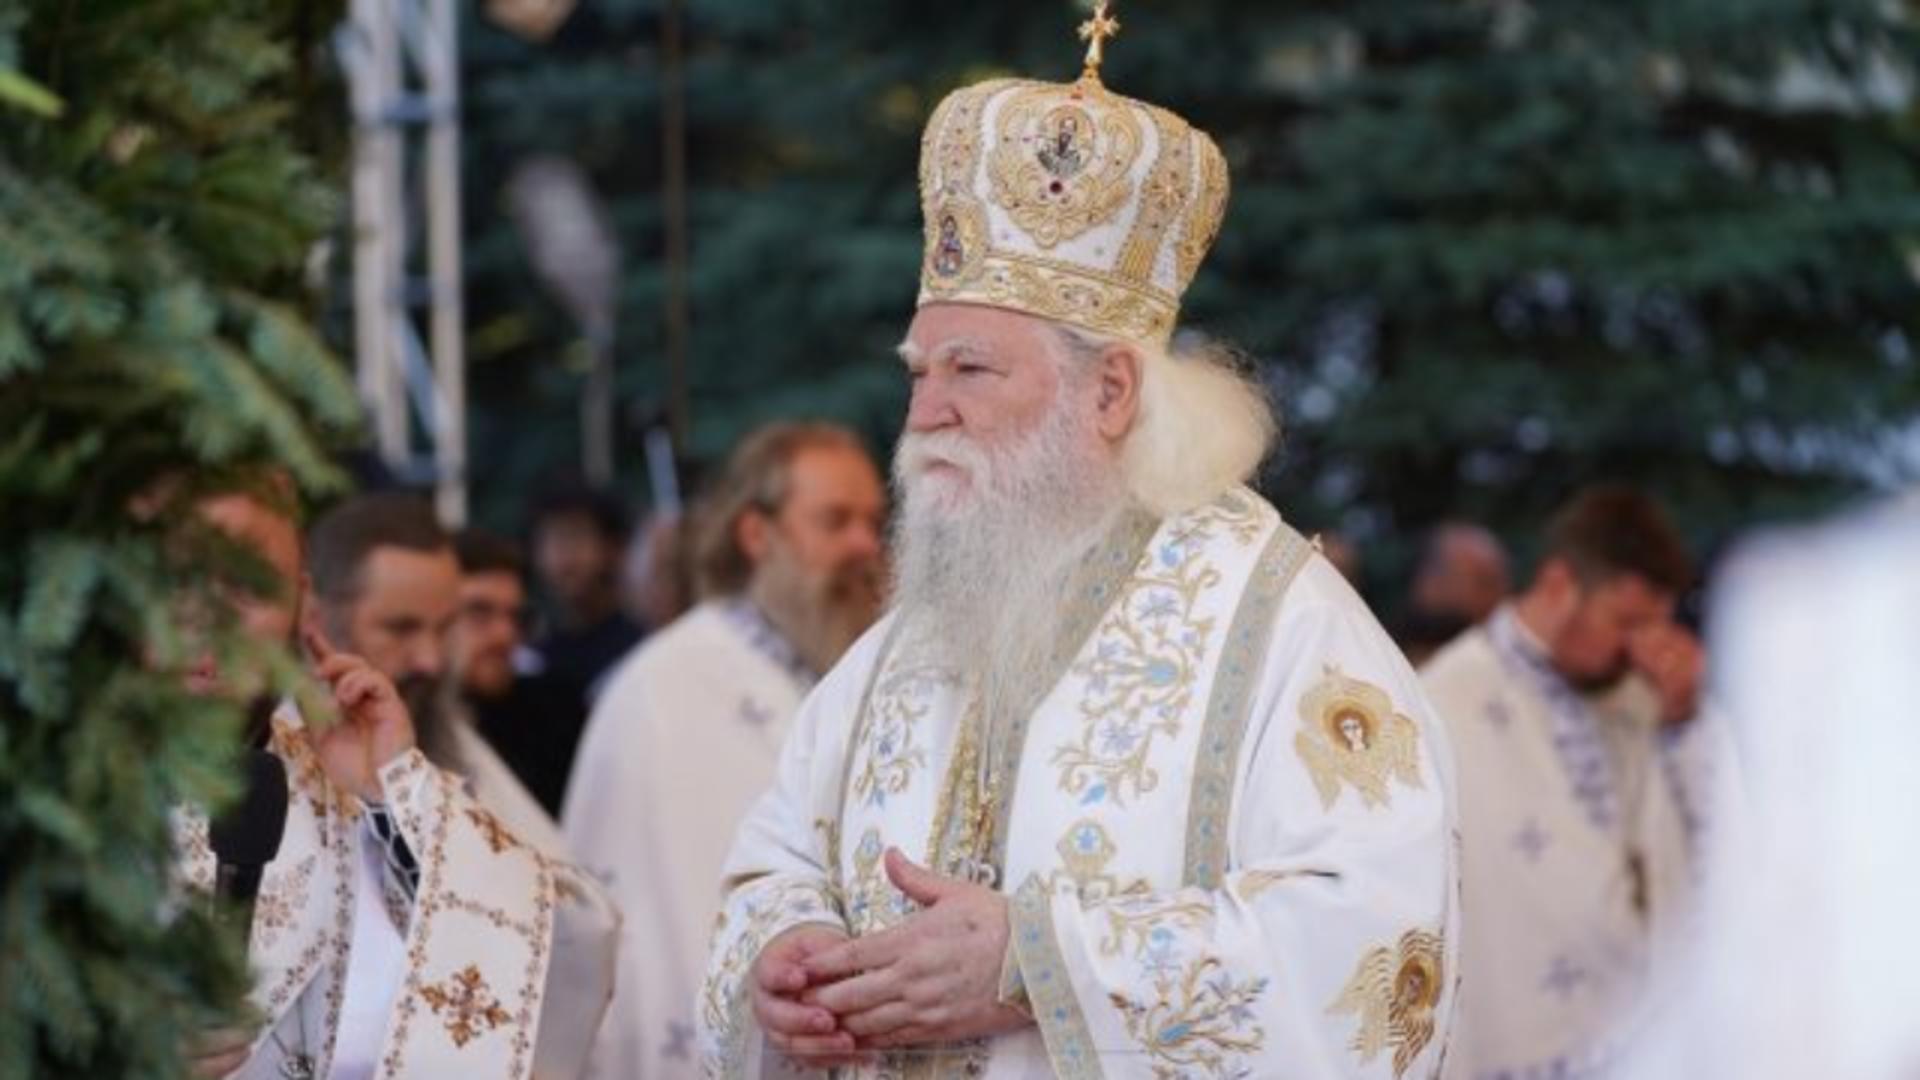 ÎPS Calinic, arhiepiscopul Sucevei și Rădăuților, a suferit o criză cardiacă